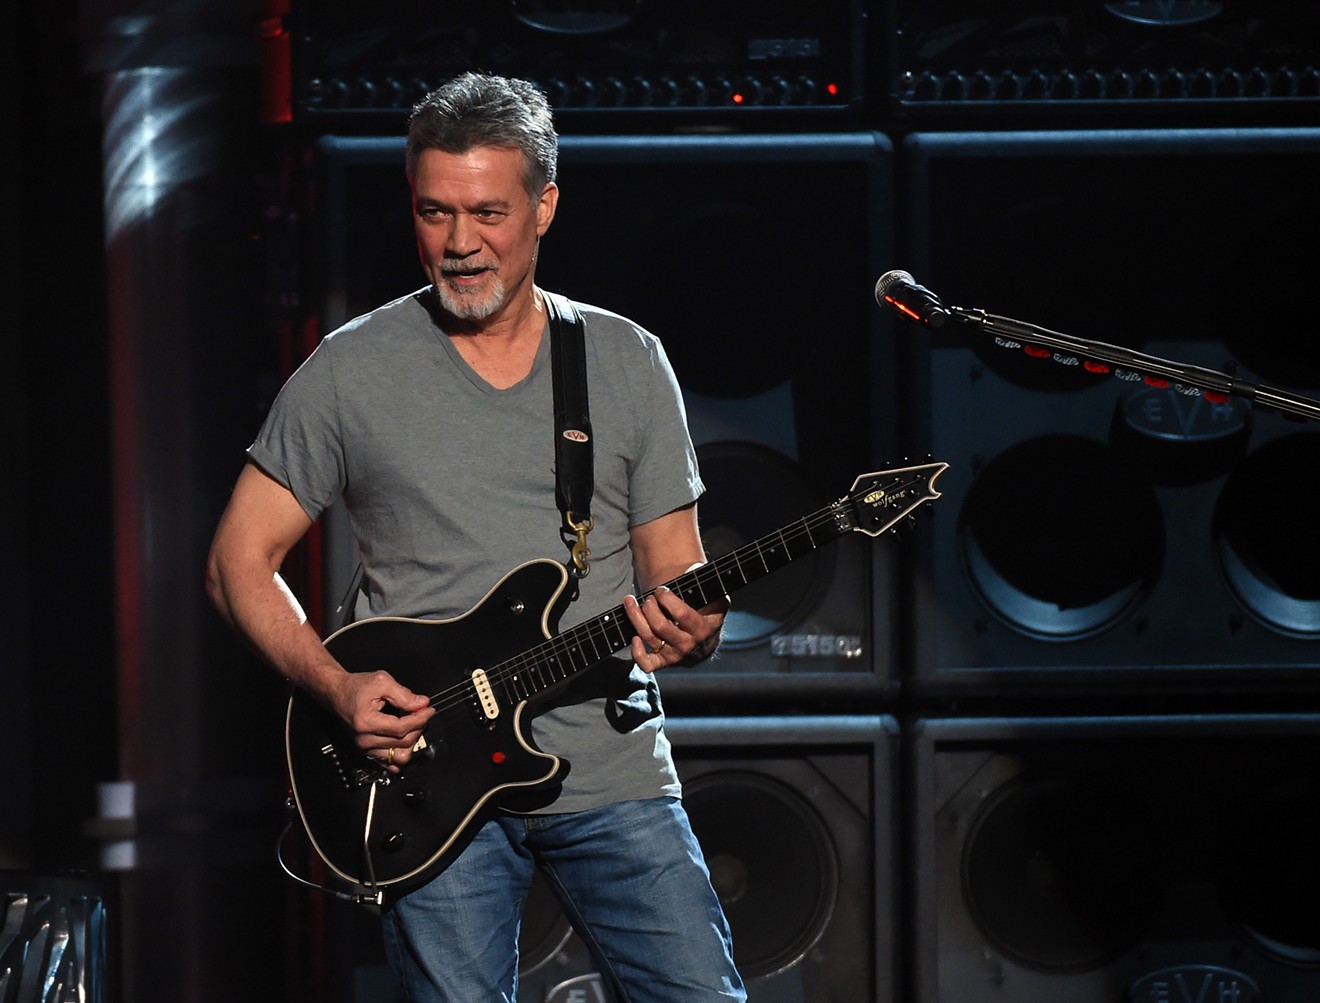 Guitar hero Eddie Van Halen died on Oct. 6 at age 65.